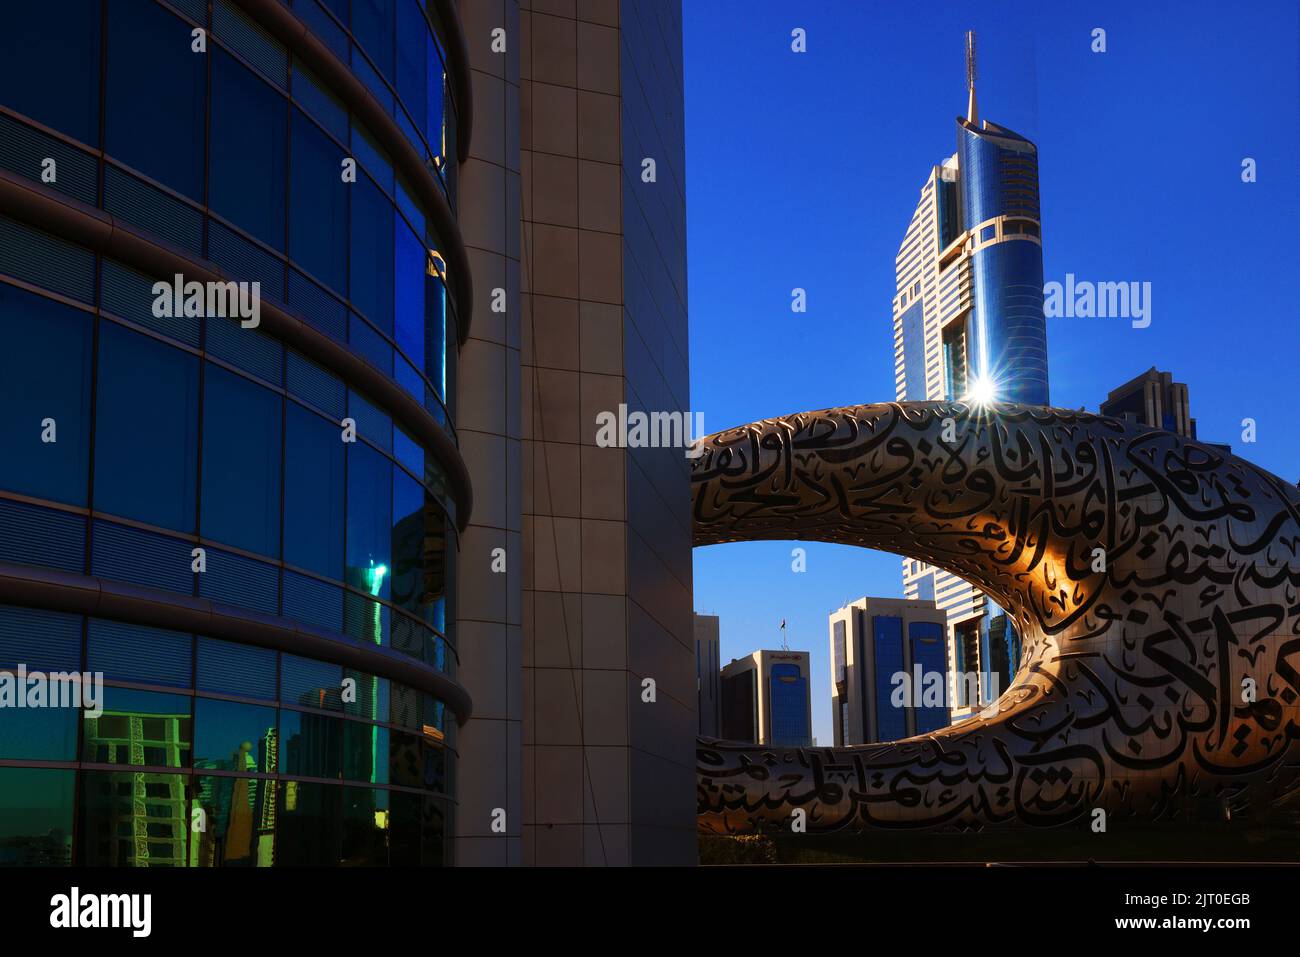 Museo de Dubai, Centro, moderne Architektur, Zukunft, Atemberaubende Aussicht auf die Skyline von Dubai mit dem Museum der Zukunft für die Expo Foto de stock